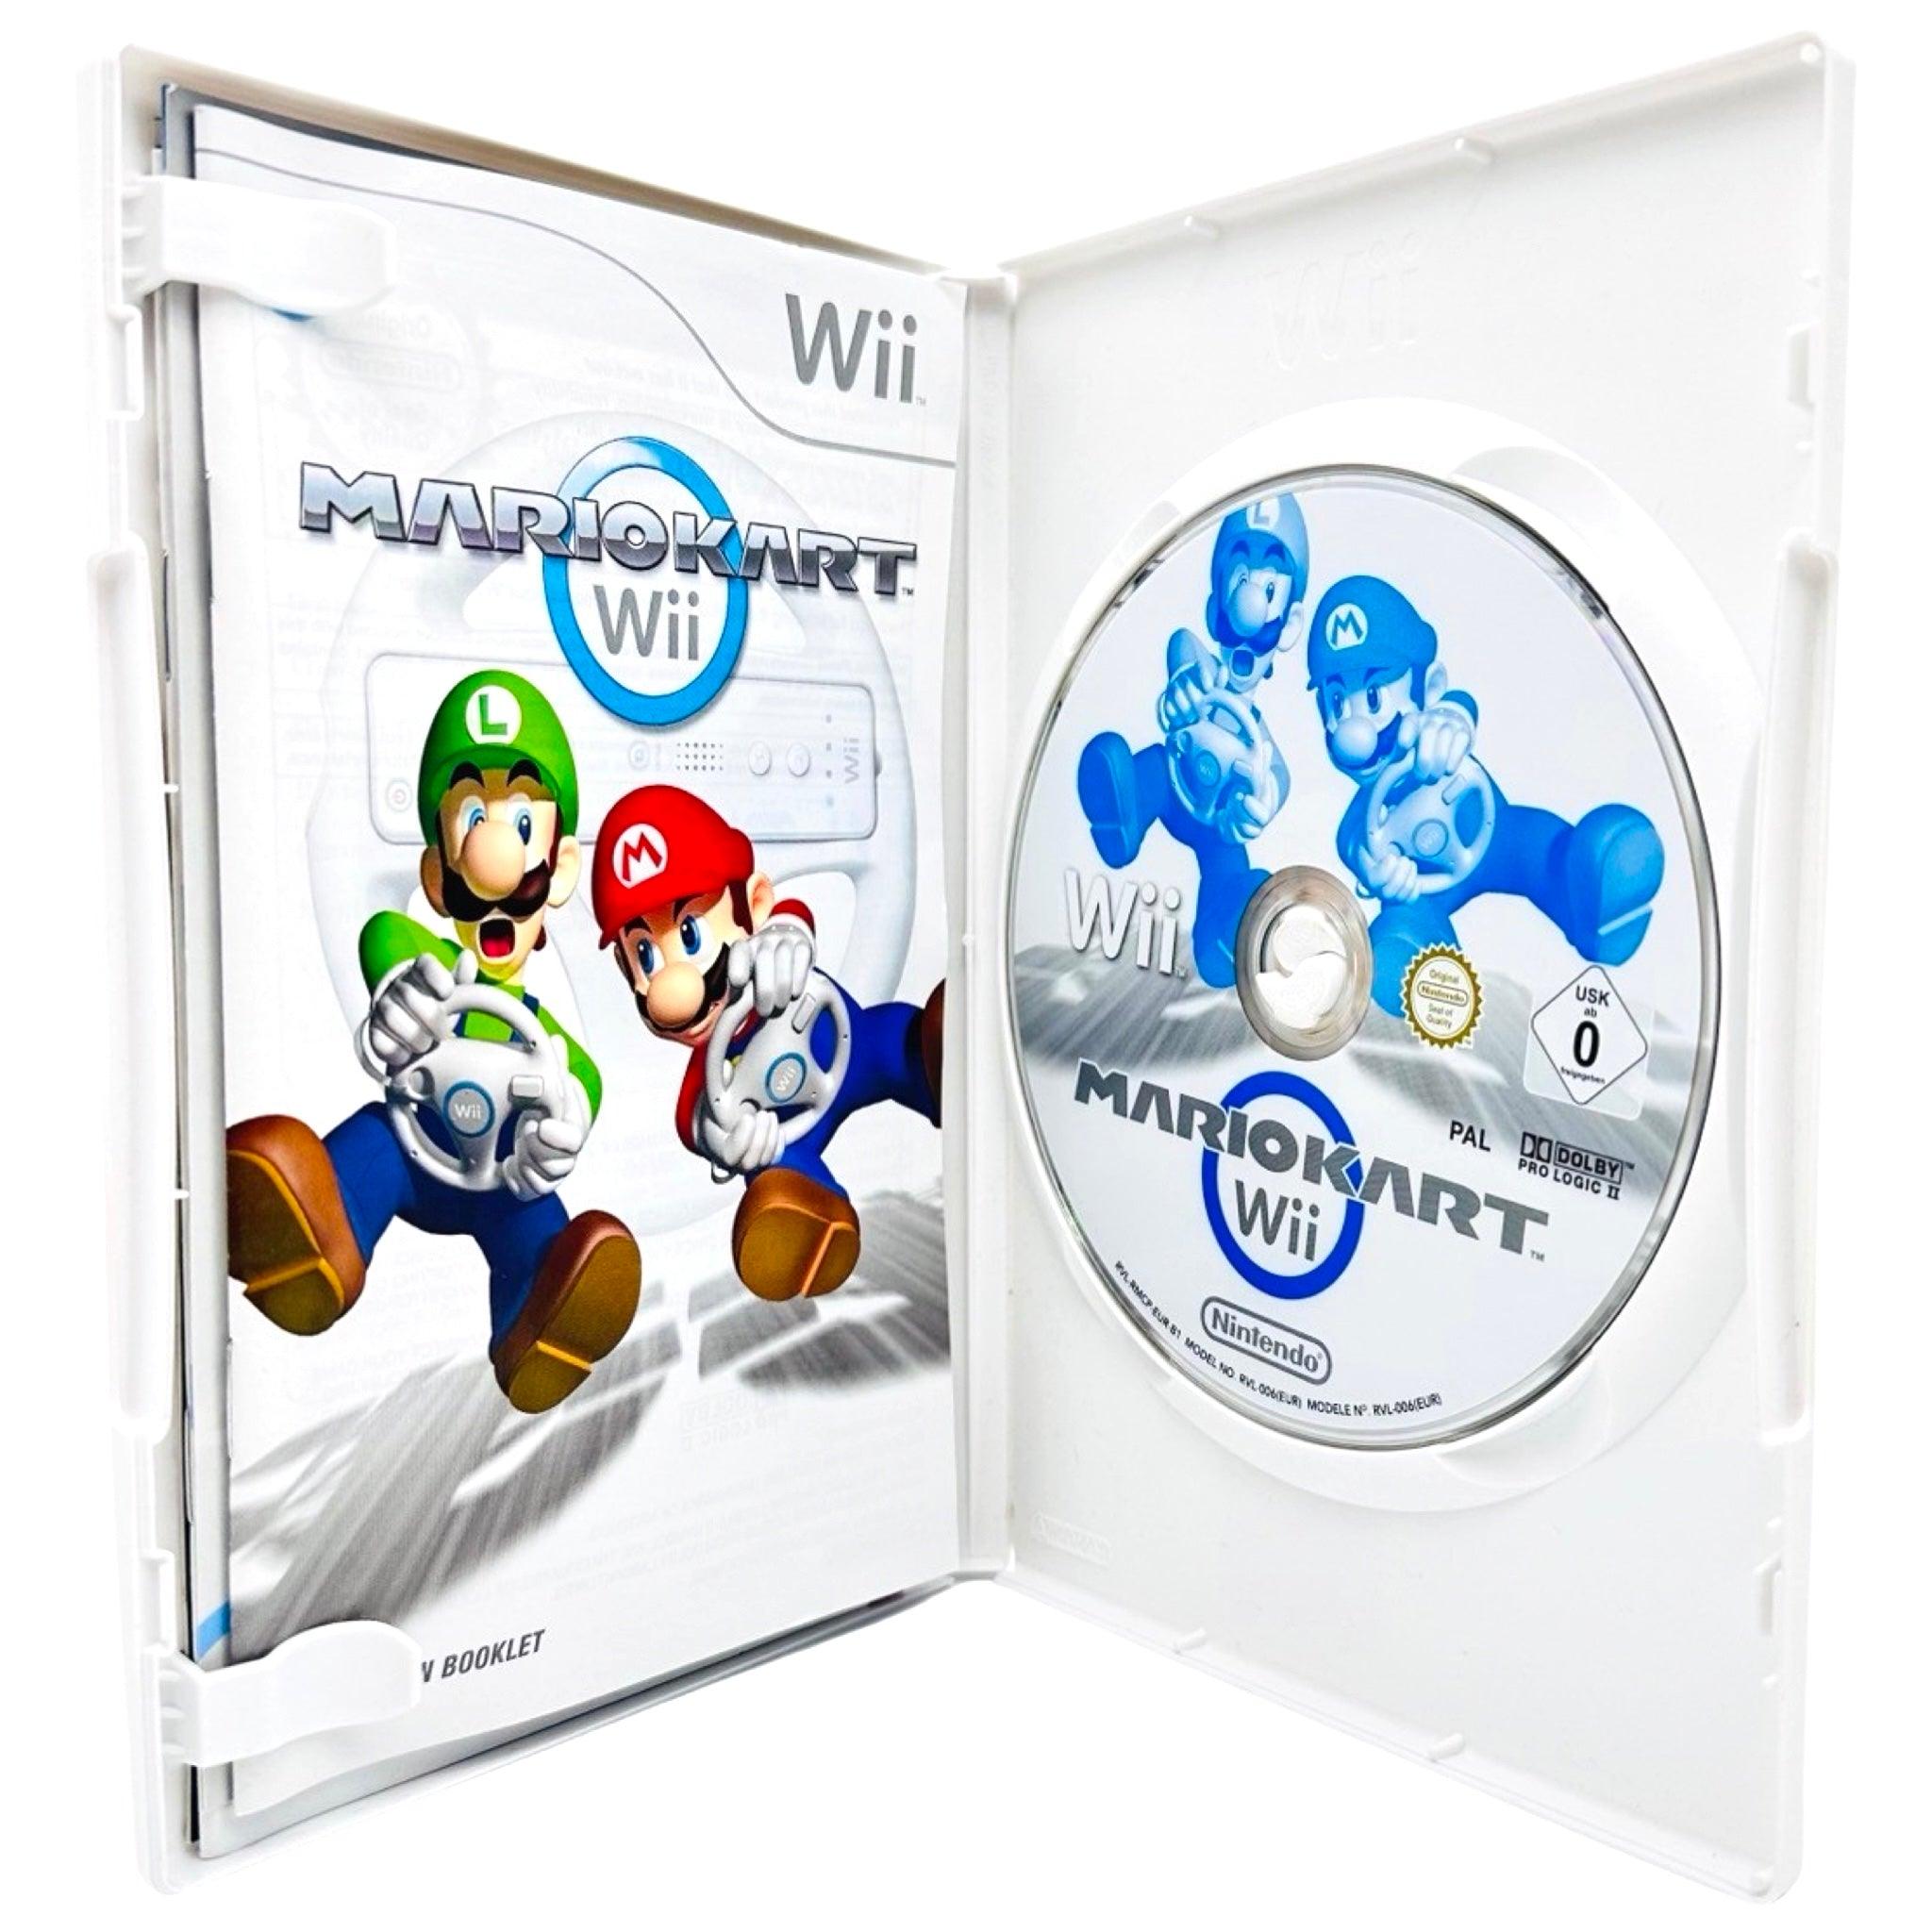 Wii: Mario Kart Wii - RetroGaming.no